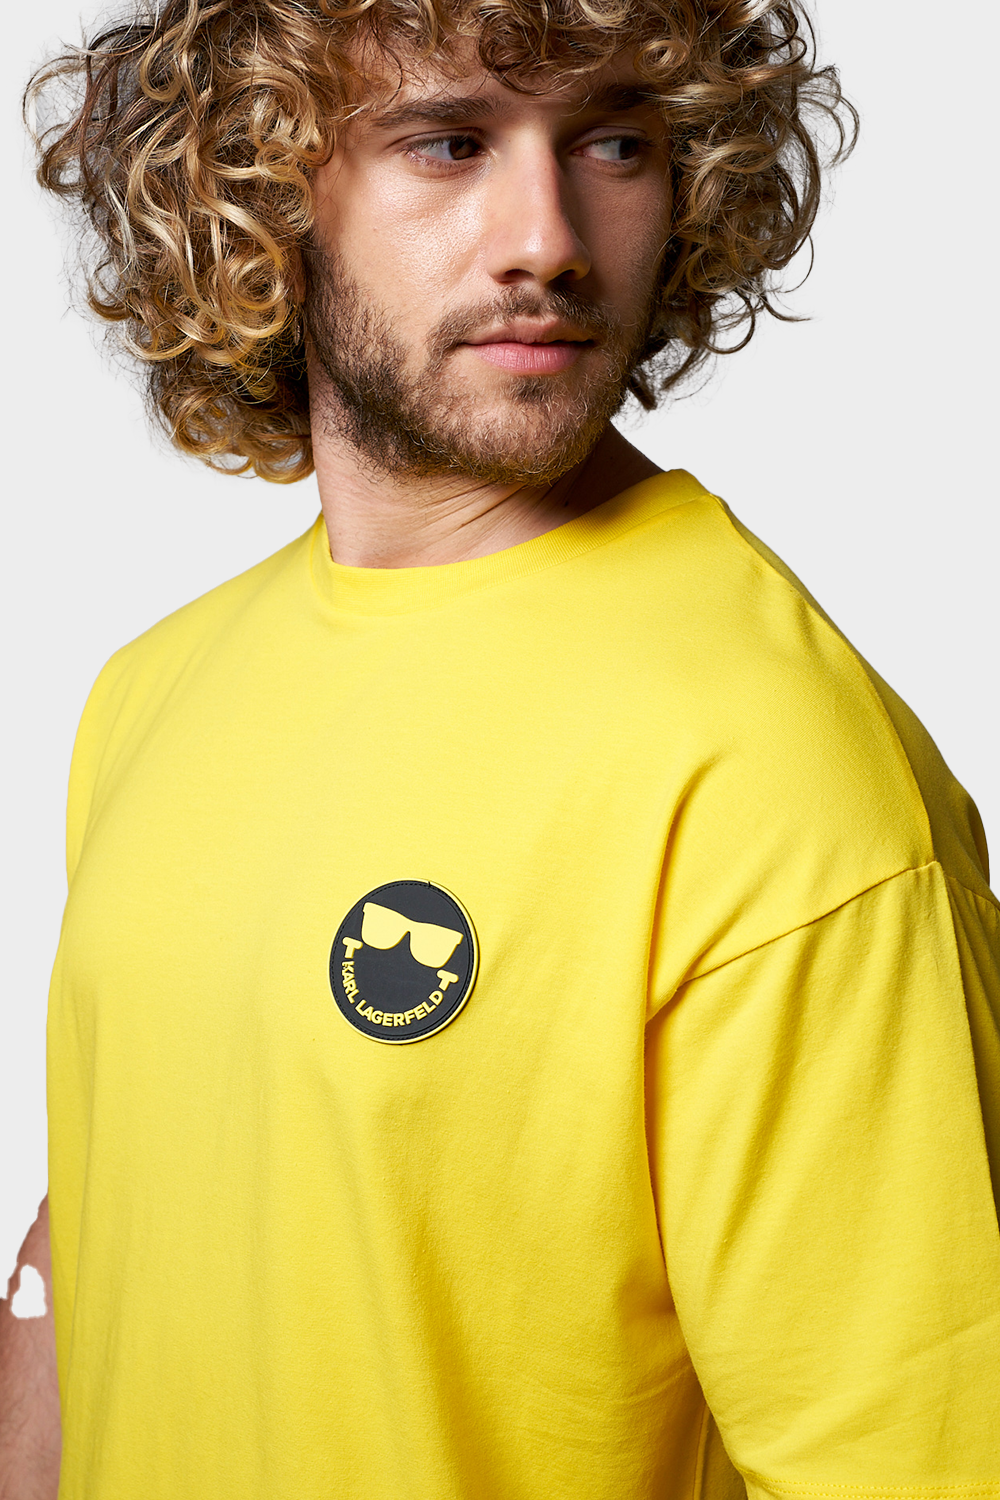 חולצת טי שירט לגברים Smileyworld KARL LAGERFELD Vendome online | ונדום .